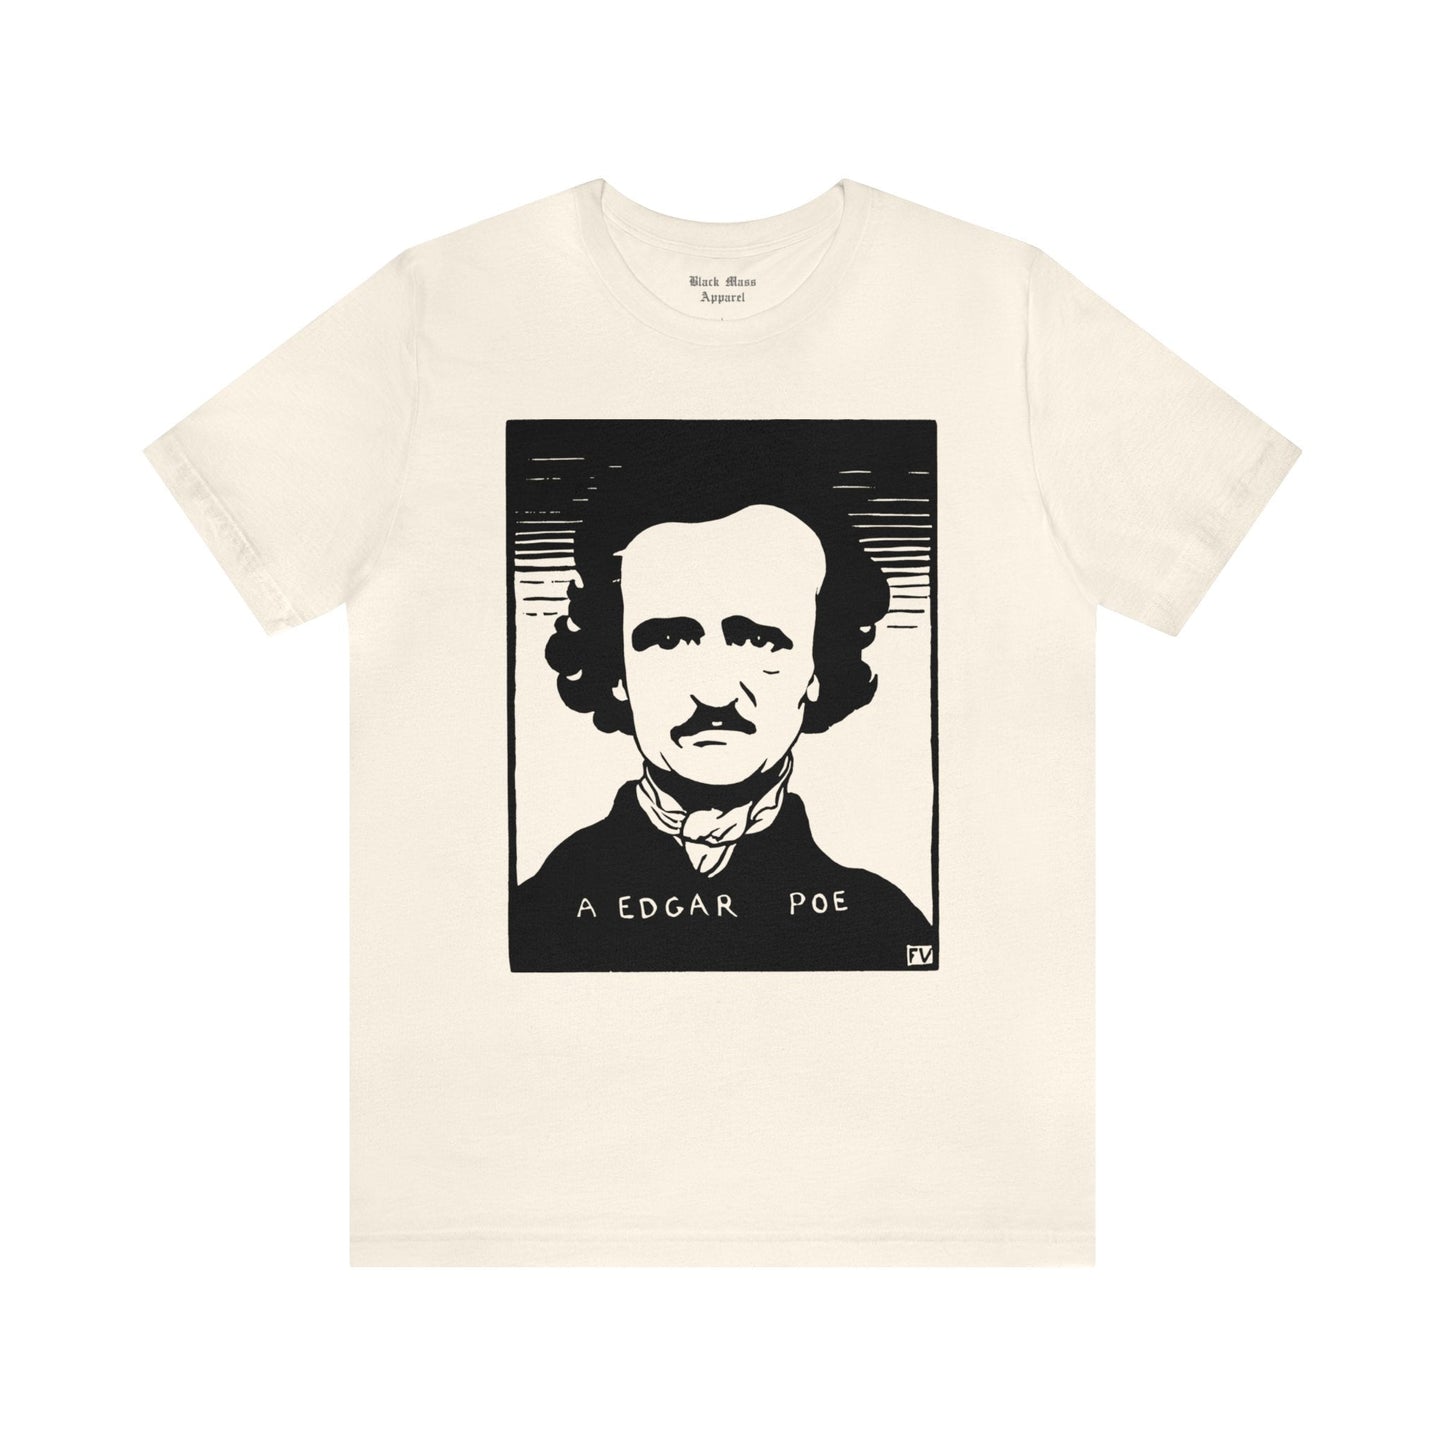 A Edgar Poe - Félix Vallotton - Black Mass Apparel - T-Shirt